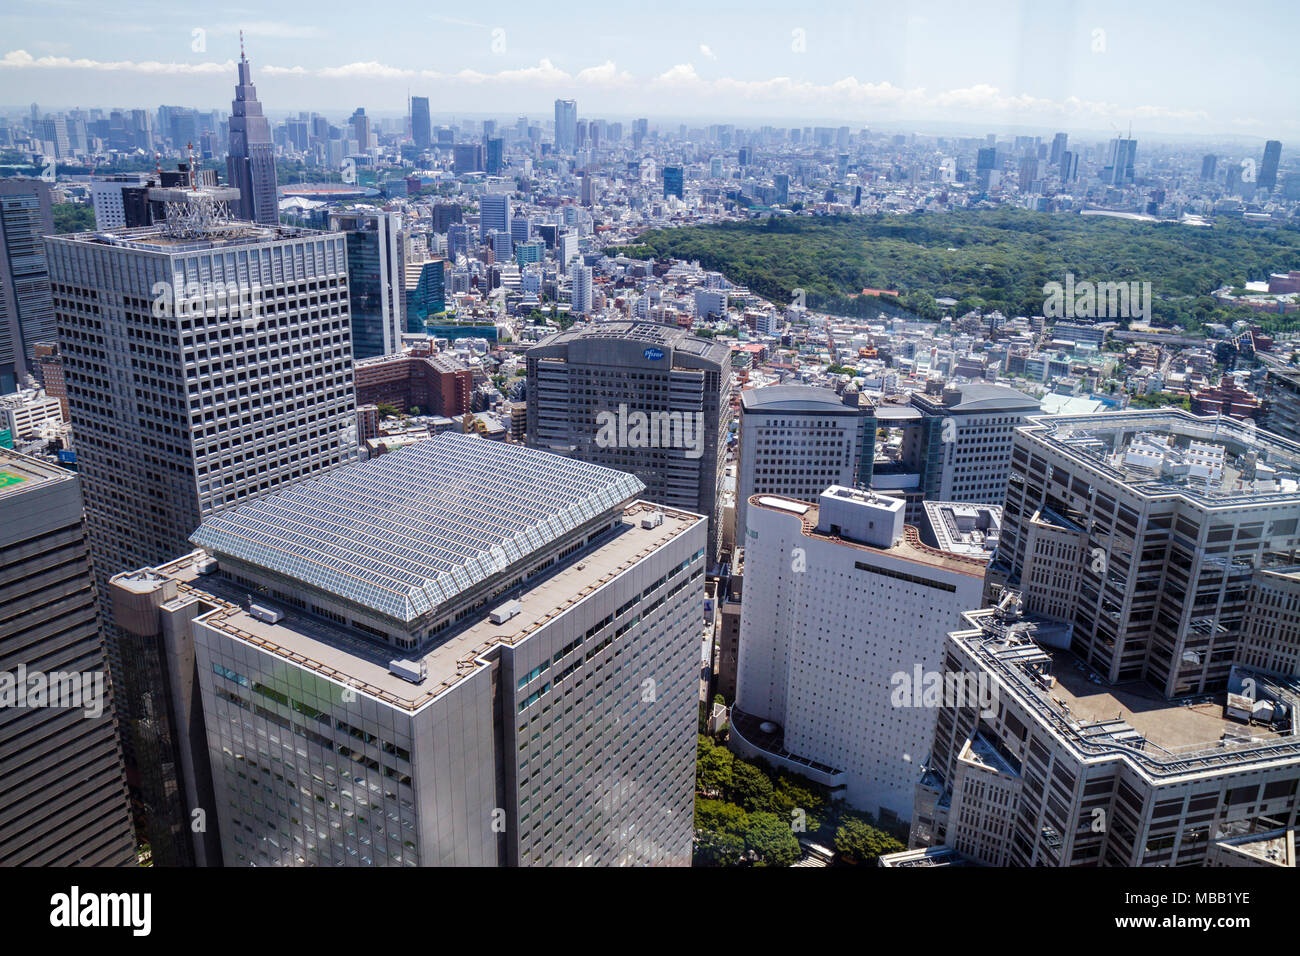 Tokyo Japan, Shinjuku, Tokyo Metropolitan Government Office No.1 edificio principale, osservatorio, 45° piano, vista aerea, finestra, skyline della città, grattacieli, alto r Foto Stock